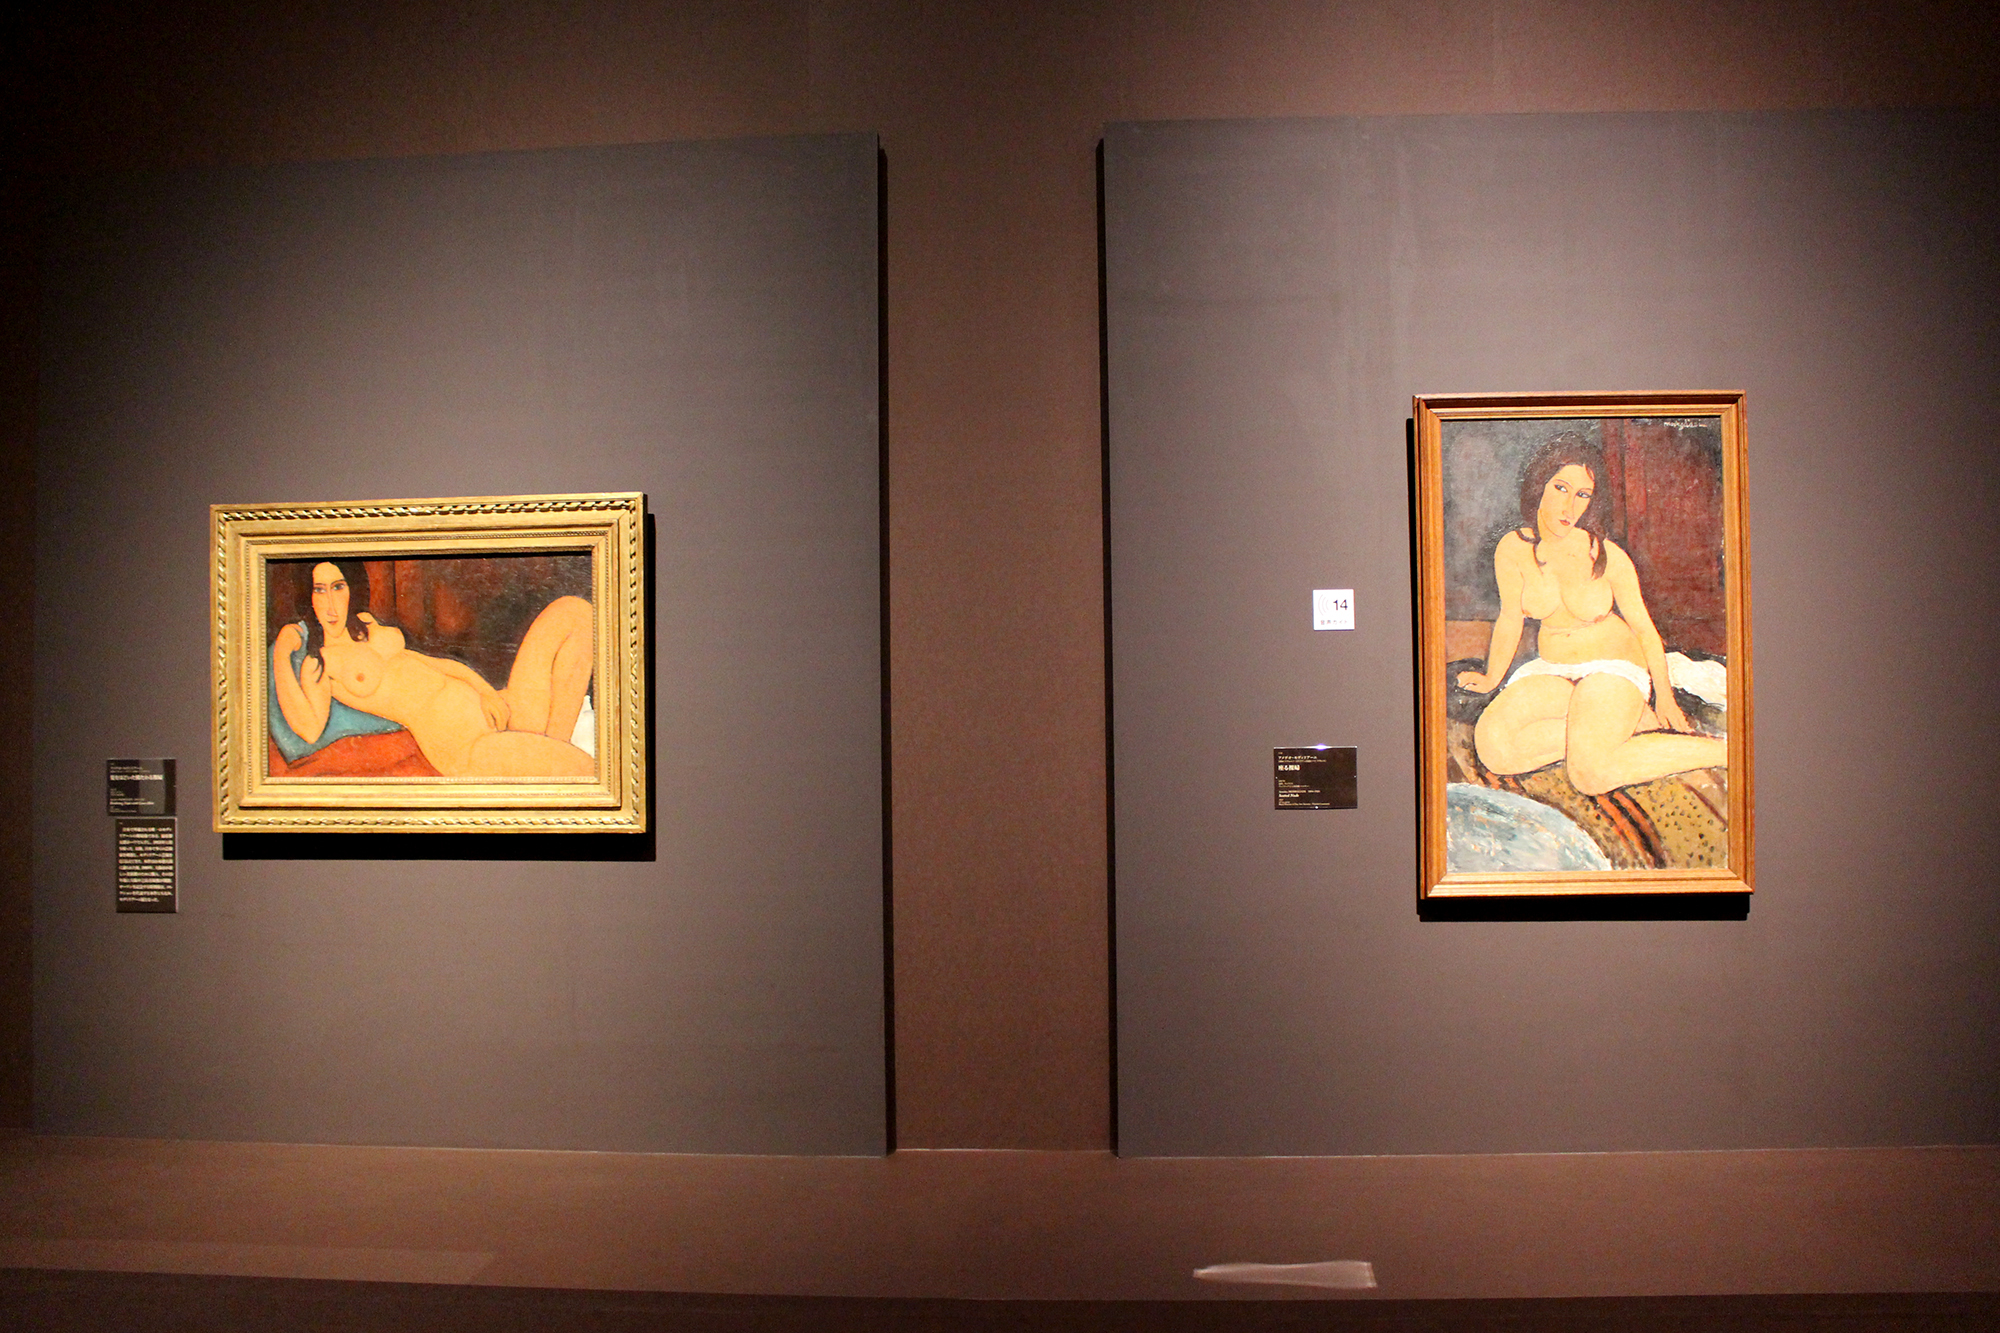 左からアメデオ・モディリアーニ「髪をほどいた横たわる裸婦」1917年　油彩、カンヴァス　大阪中之島美術館、アメデオ・モディリアーニ「座る裸婦」1917年　油彩、カンヴァス　アントワープ王立美術館